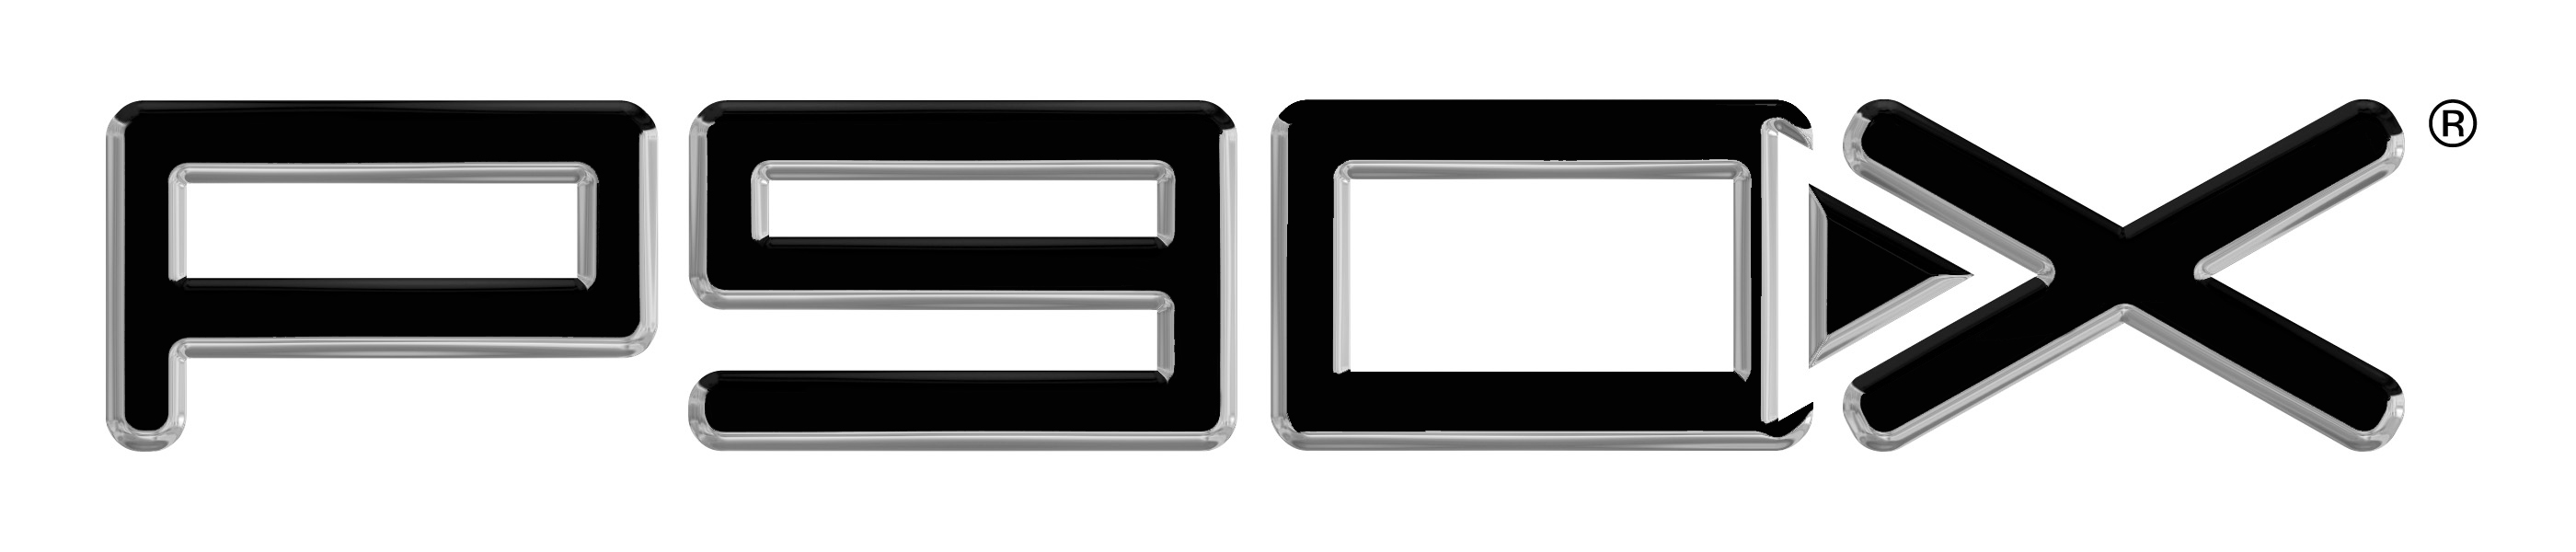 p90x logo png